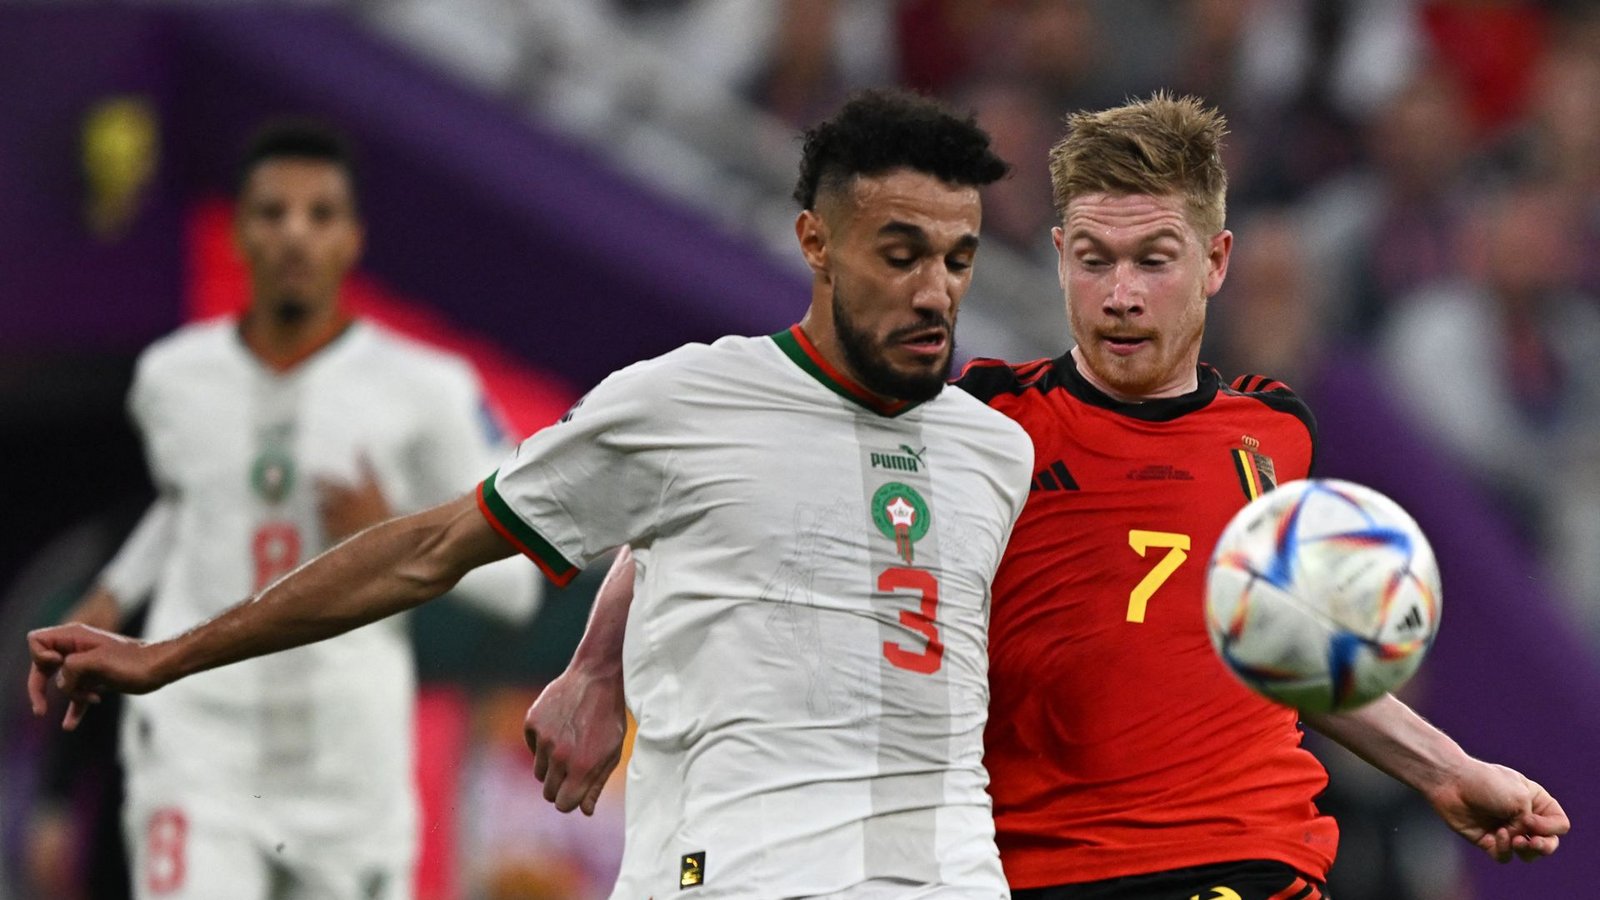 Marokkos Bayern-Profi Noussair Mazraoui (li.) gegen Belgiens Kevin De Bruyne – auf eines dieser beiden Mannschaften könnte das DFB-Team im Achtelfinale treffen.Foto: AFP/Manan Vatsyayana